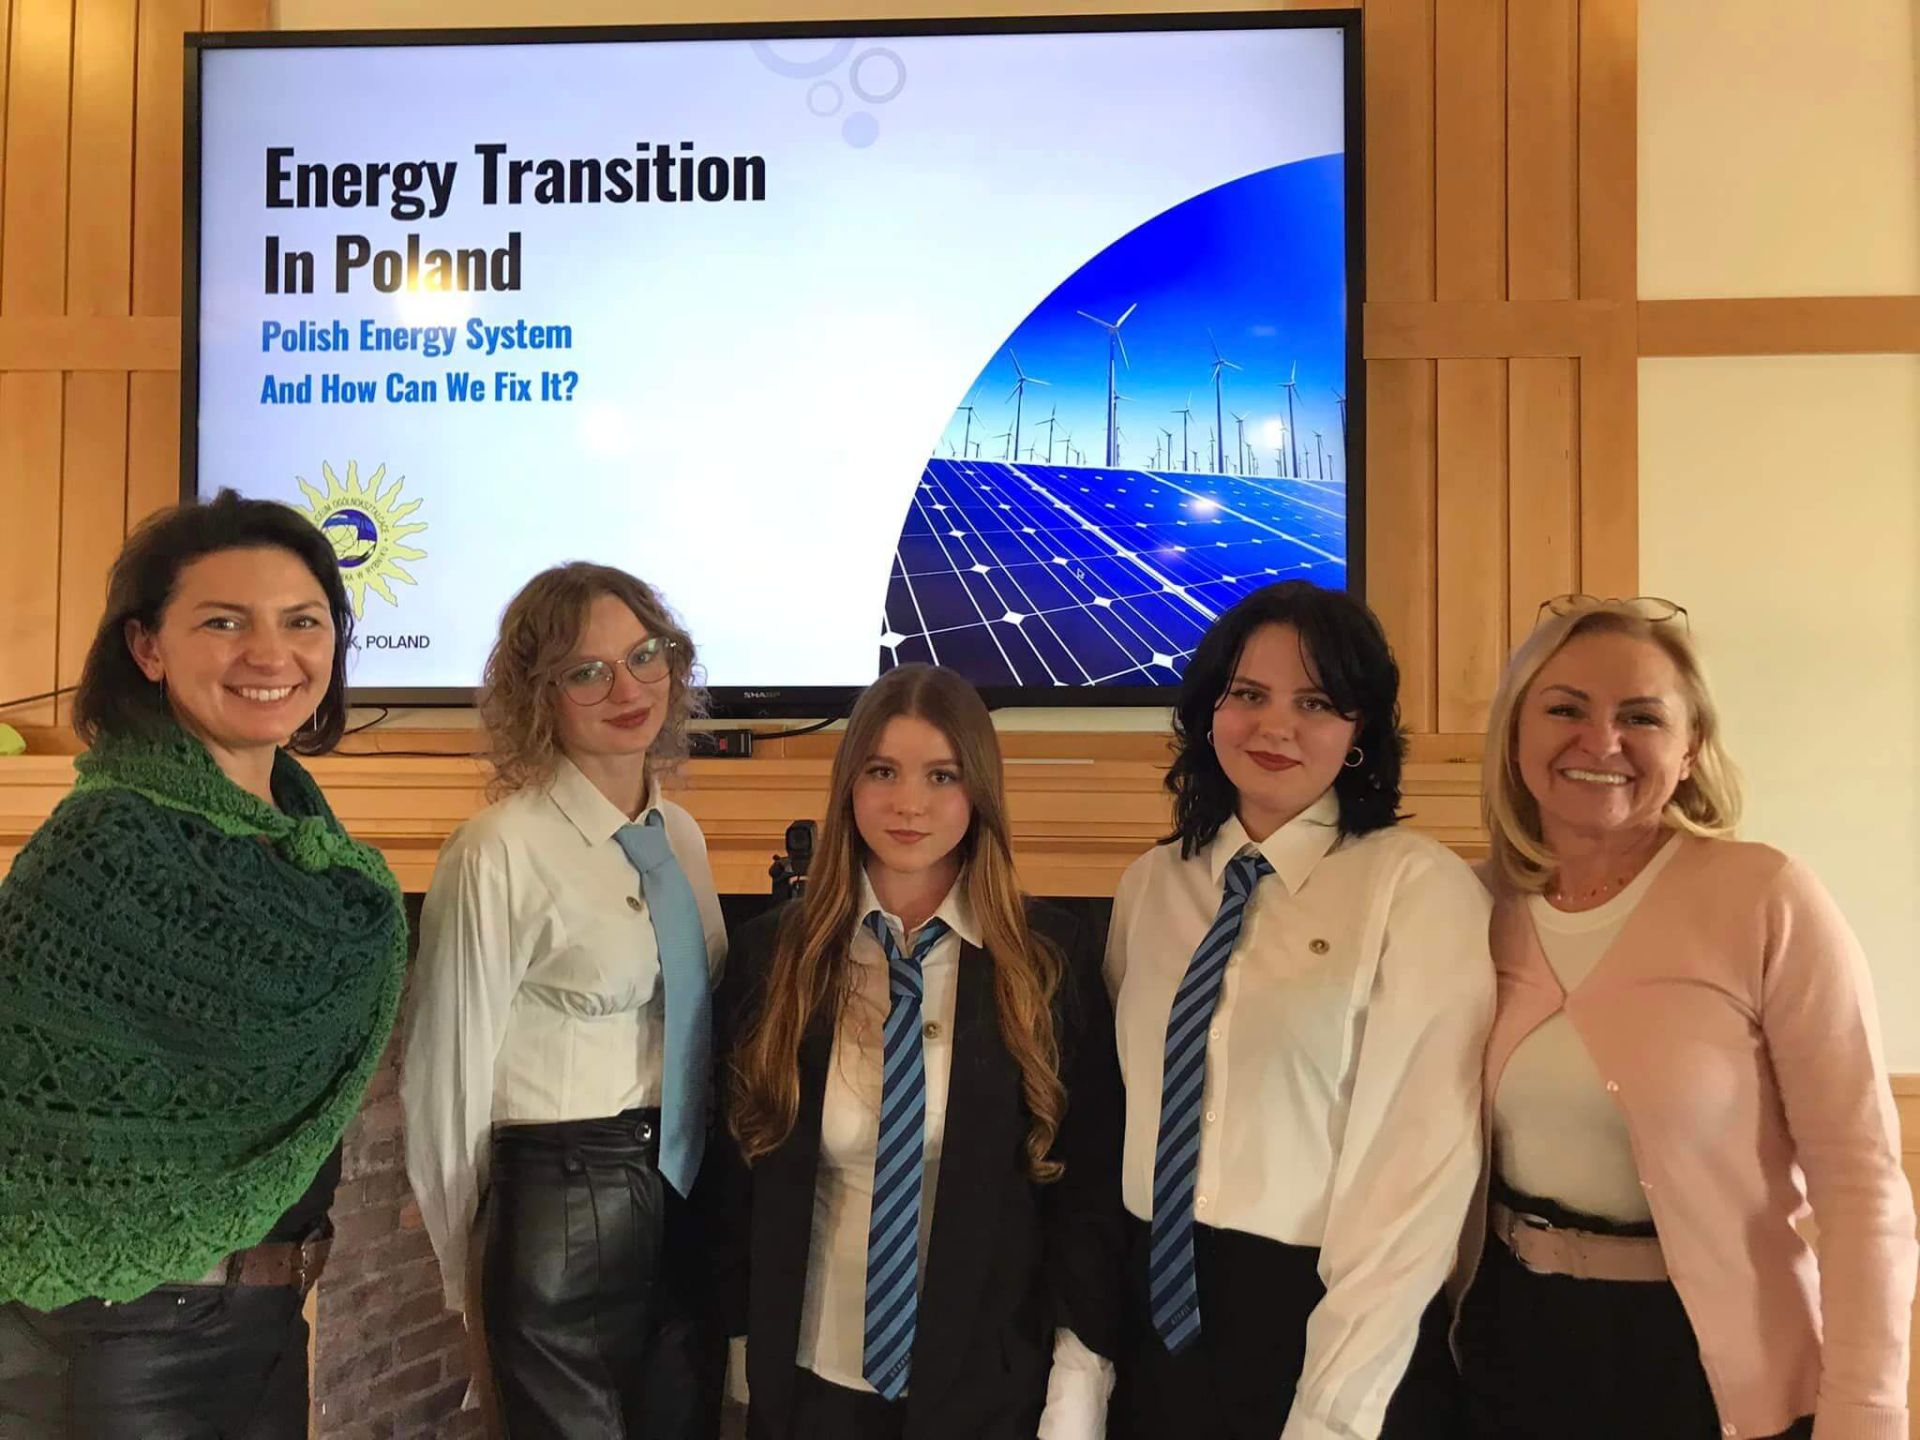 - W Bostonie uczennice opowiadały, dlaczego polski system energetyczny wciąż oparty jest na węglu oraz o następującej w Rybniku transformacji energetycznej - opowiada dyrektor Małgorzata Wróbel. Zdj. Arch. szkoły 